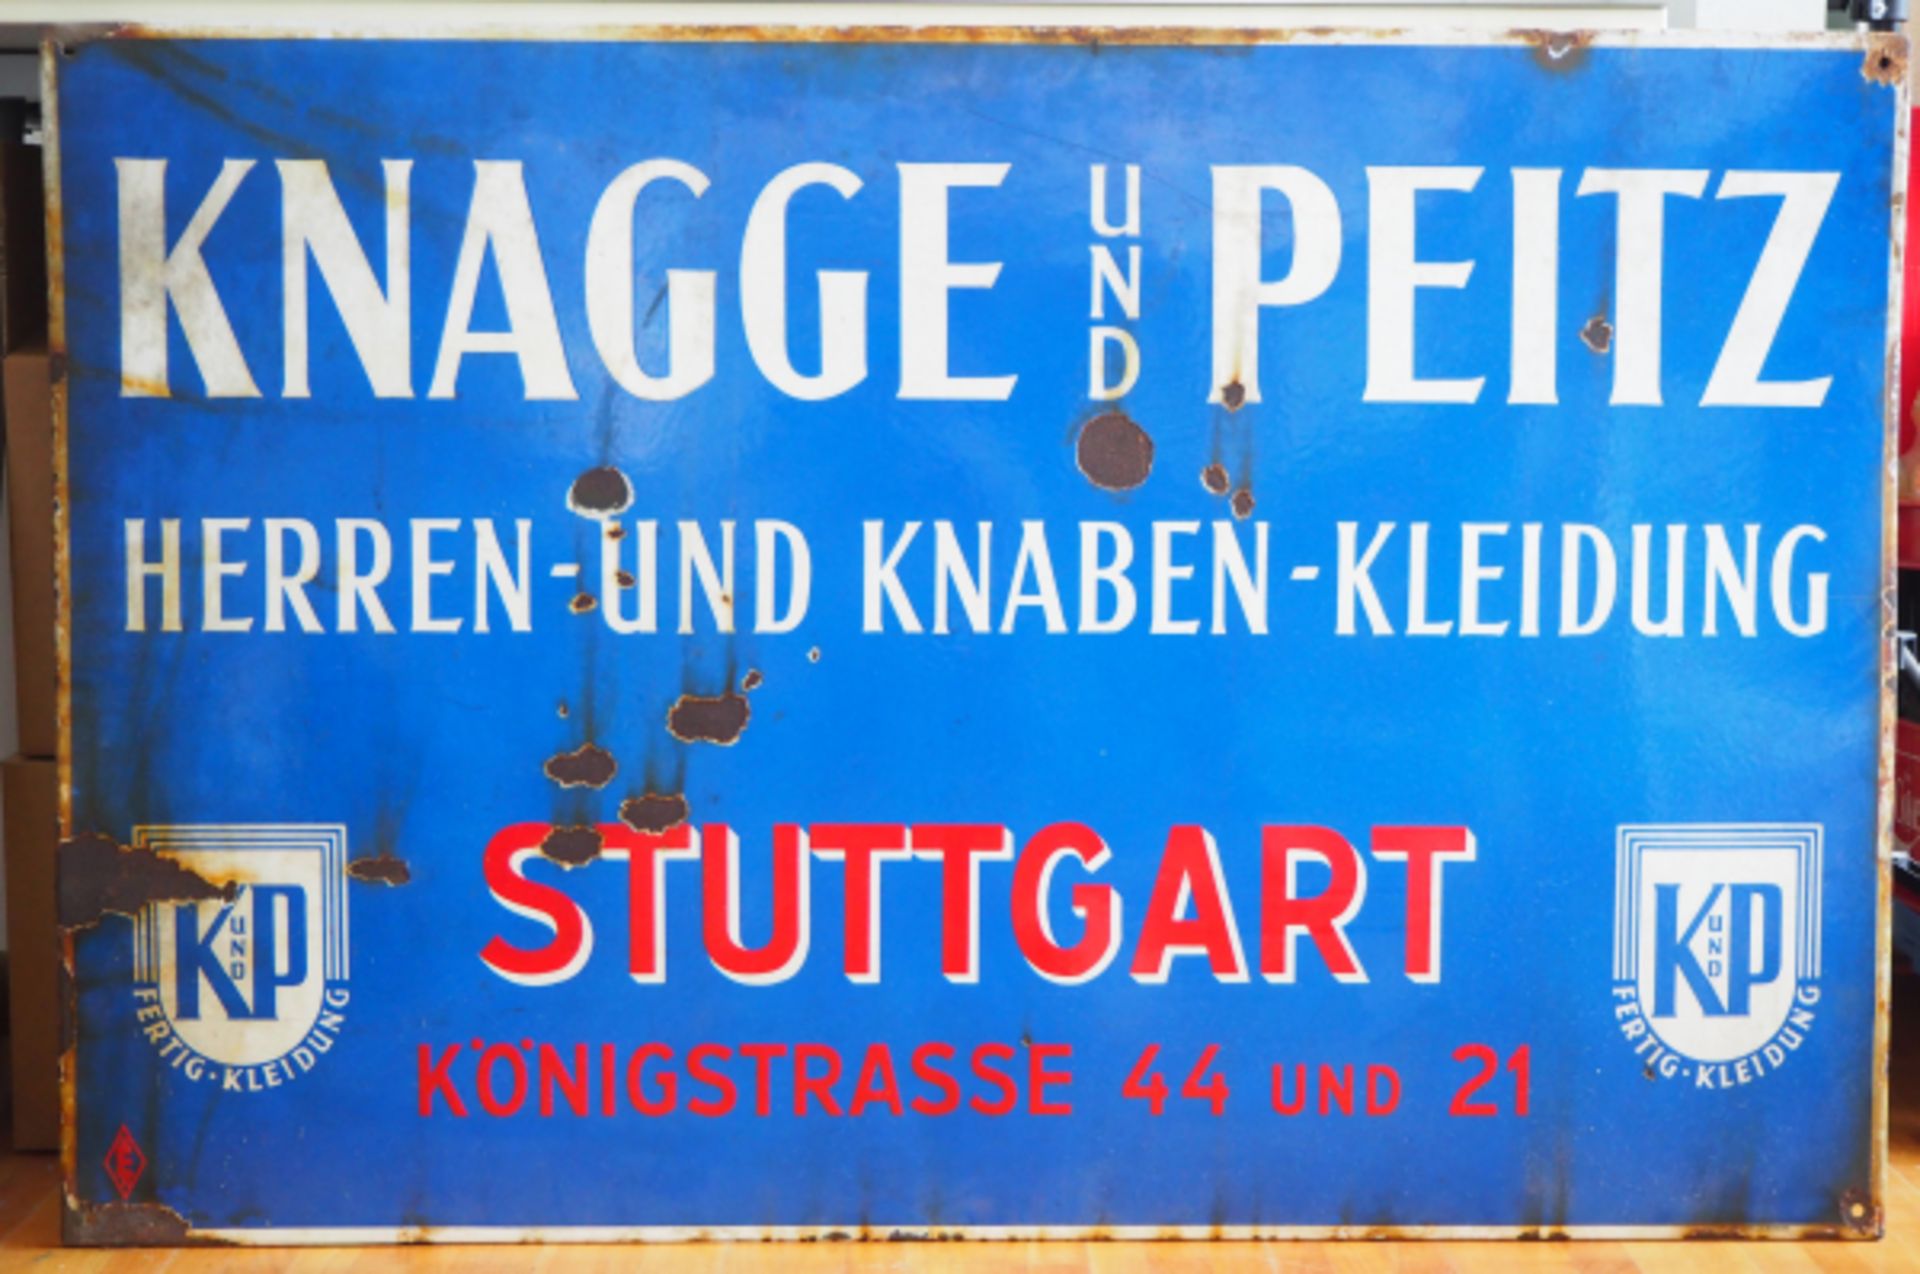 Emailschild Knagge und Peitz - Stuttgart.Blauer Grund, weiße und rote Schrift, mit Firmenlogo,